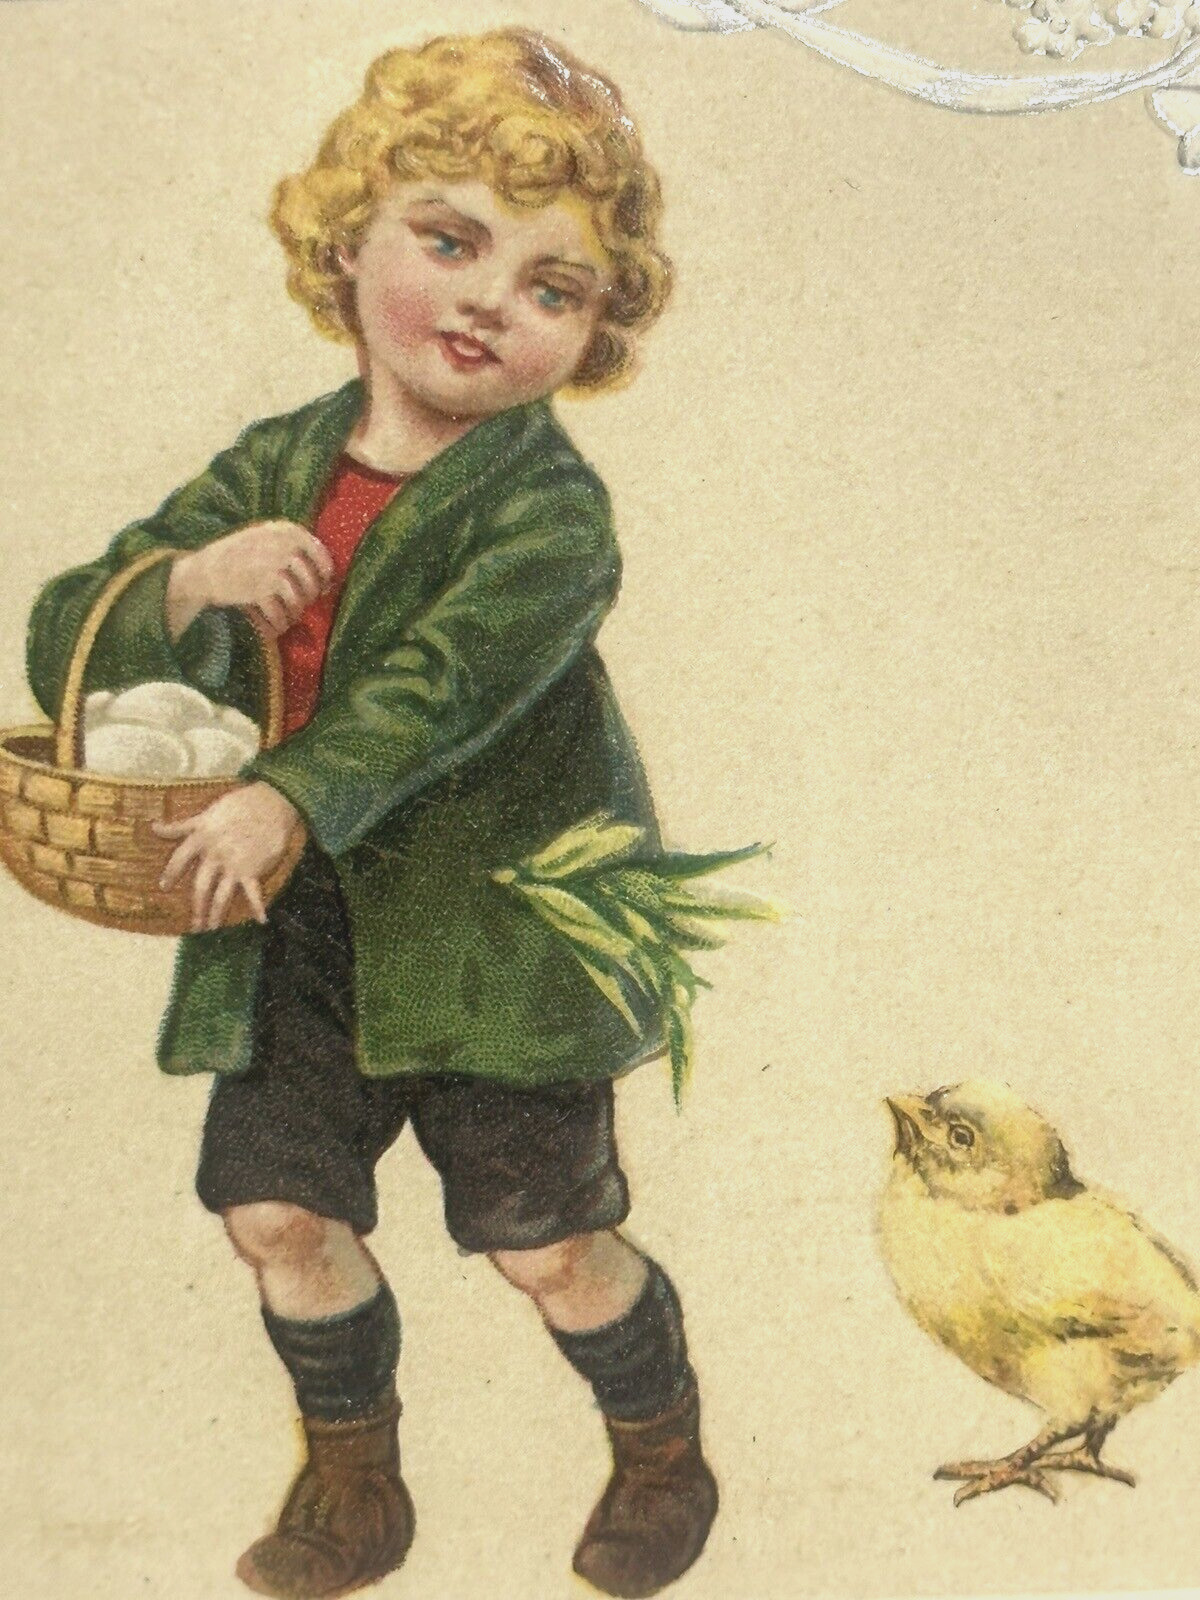 Easter Postcard Winsch Schmucker u/s Chick Follows Boy Carries Basket of Eggs